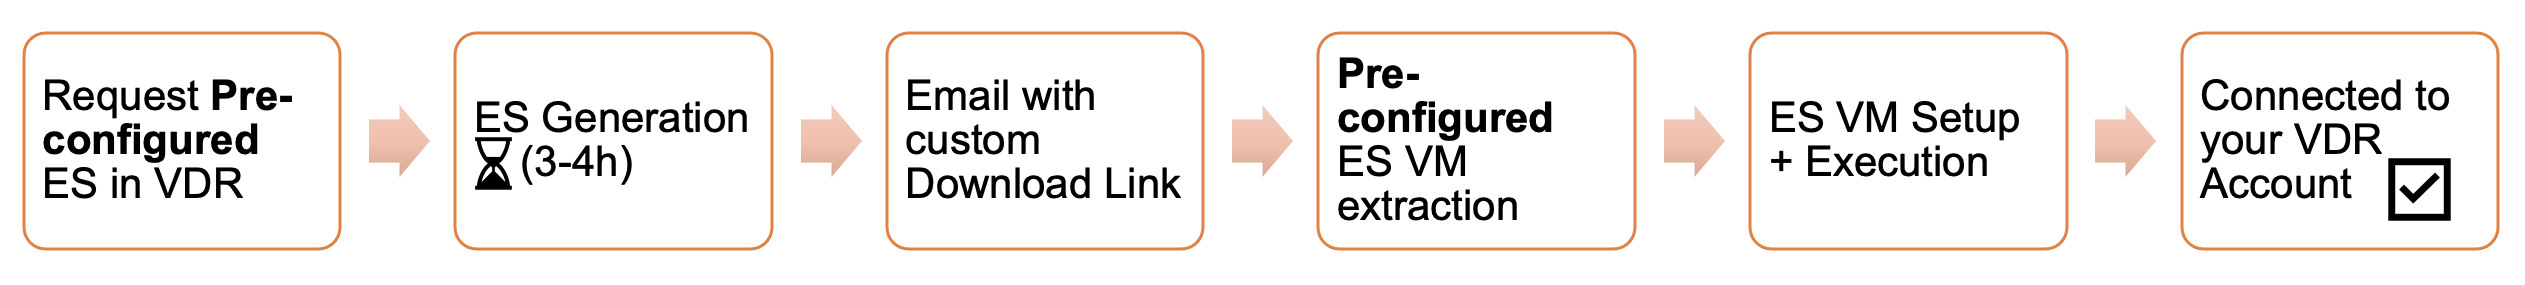 ES Process Preconfigured